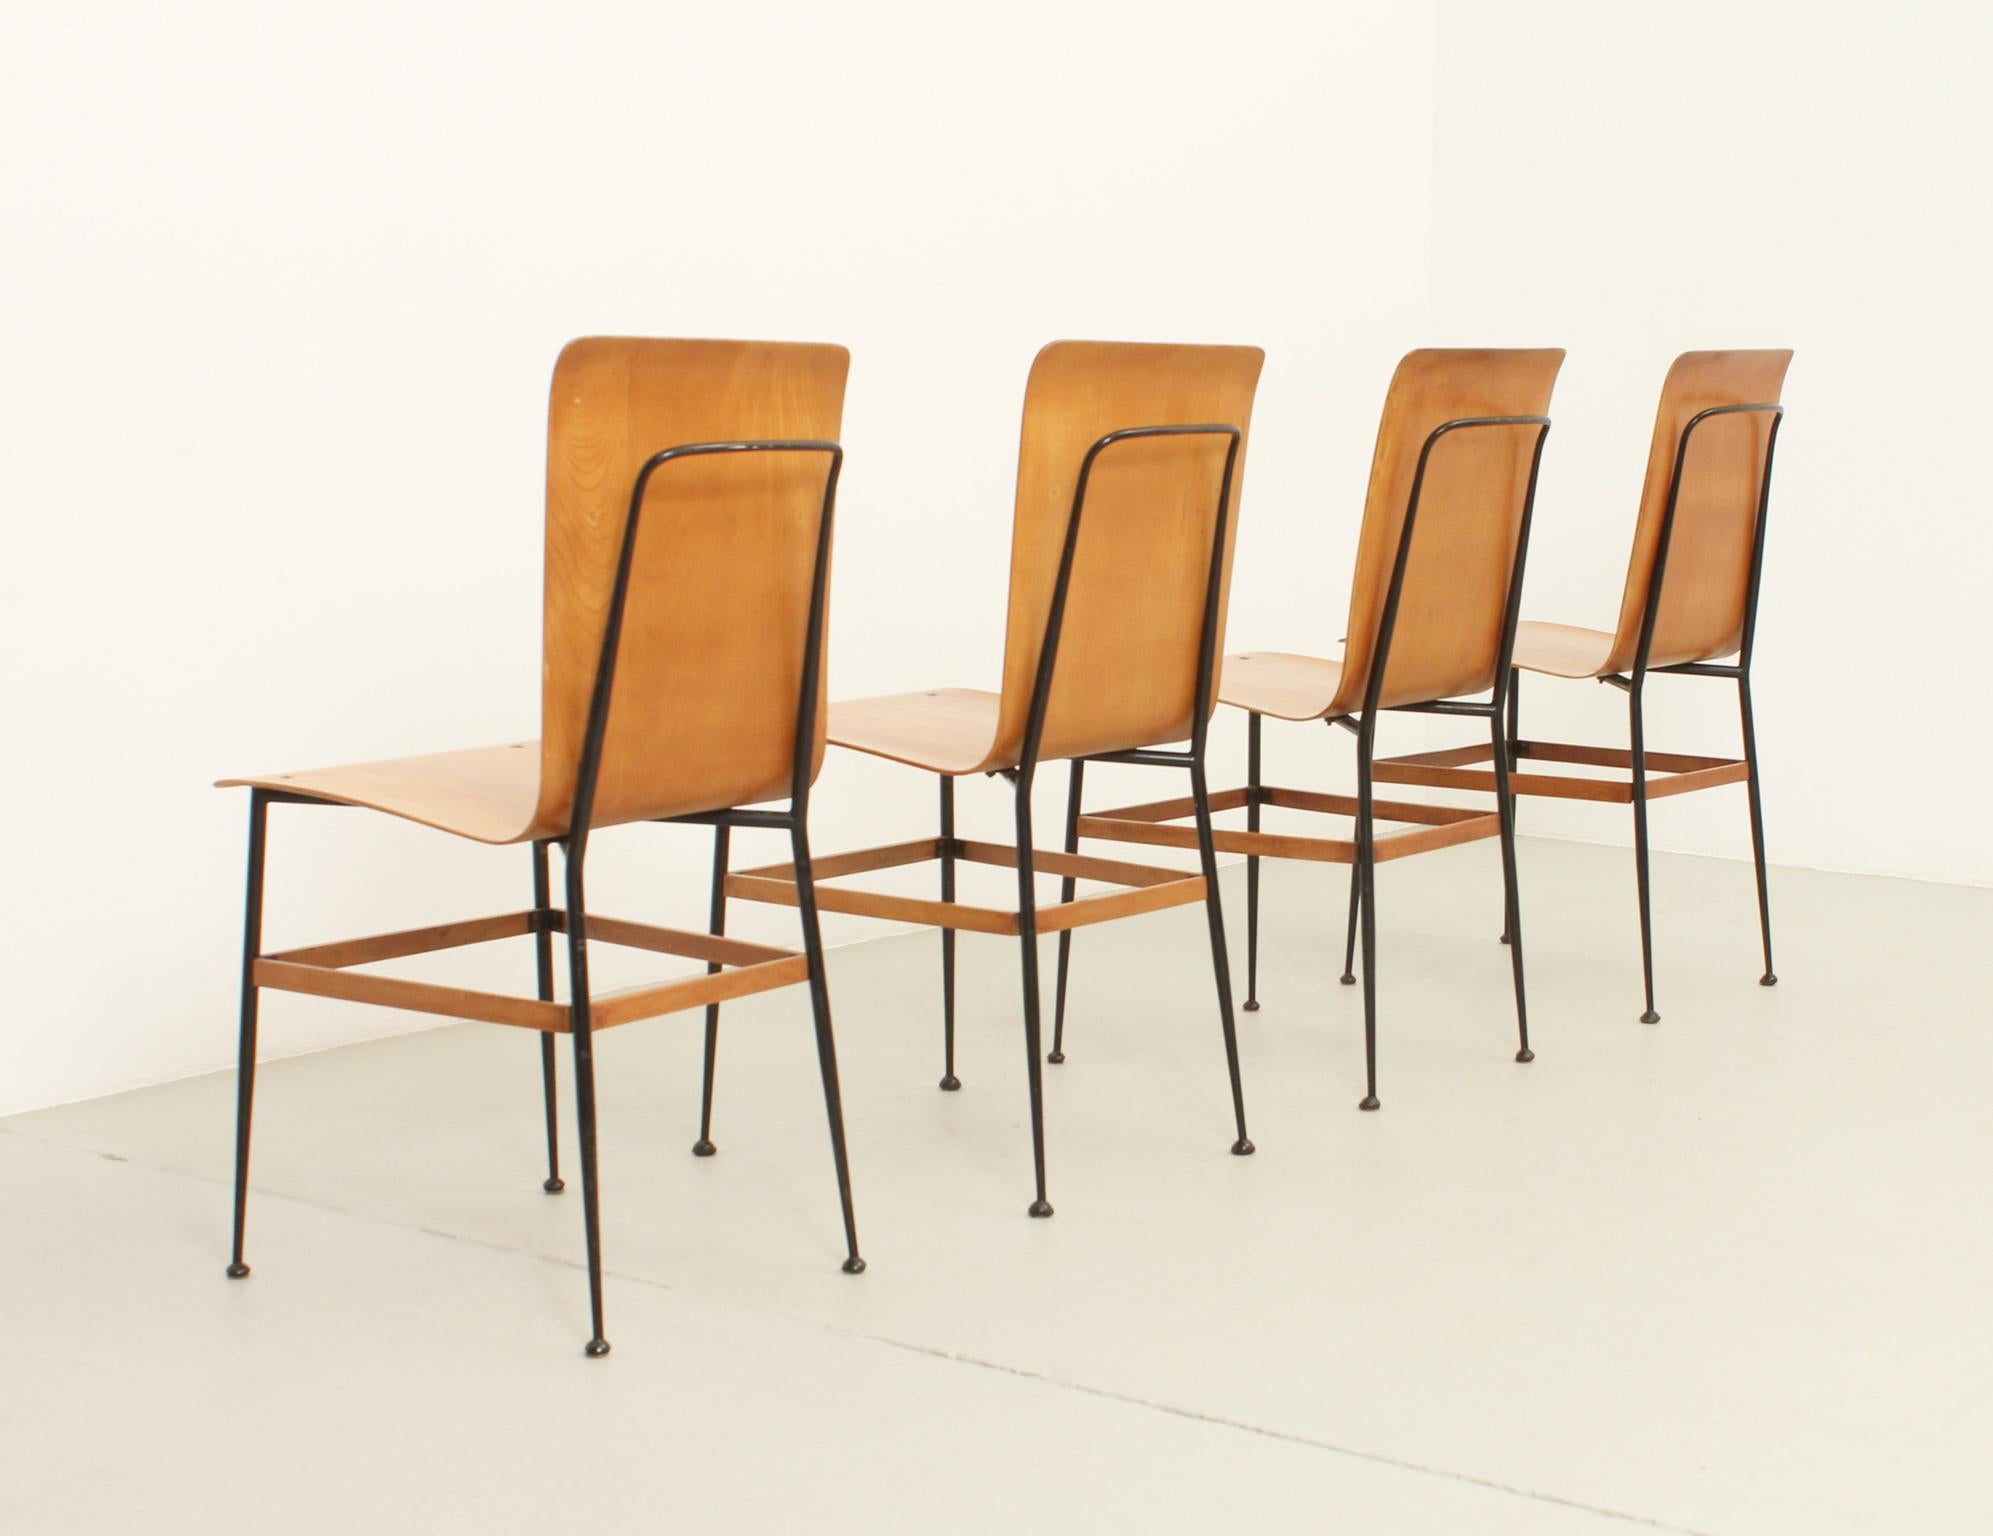 Vier Esszimmerstühle, entworfen in den 1950er Jahren von Carlo Ratti und hergestellt von Industria Legni Curvati, Italien. Sitz aus Sperrholz mit schwarz lackiertem Metallgestell. Unterschrieben. 